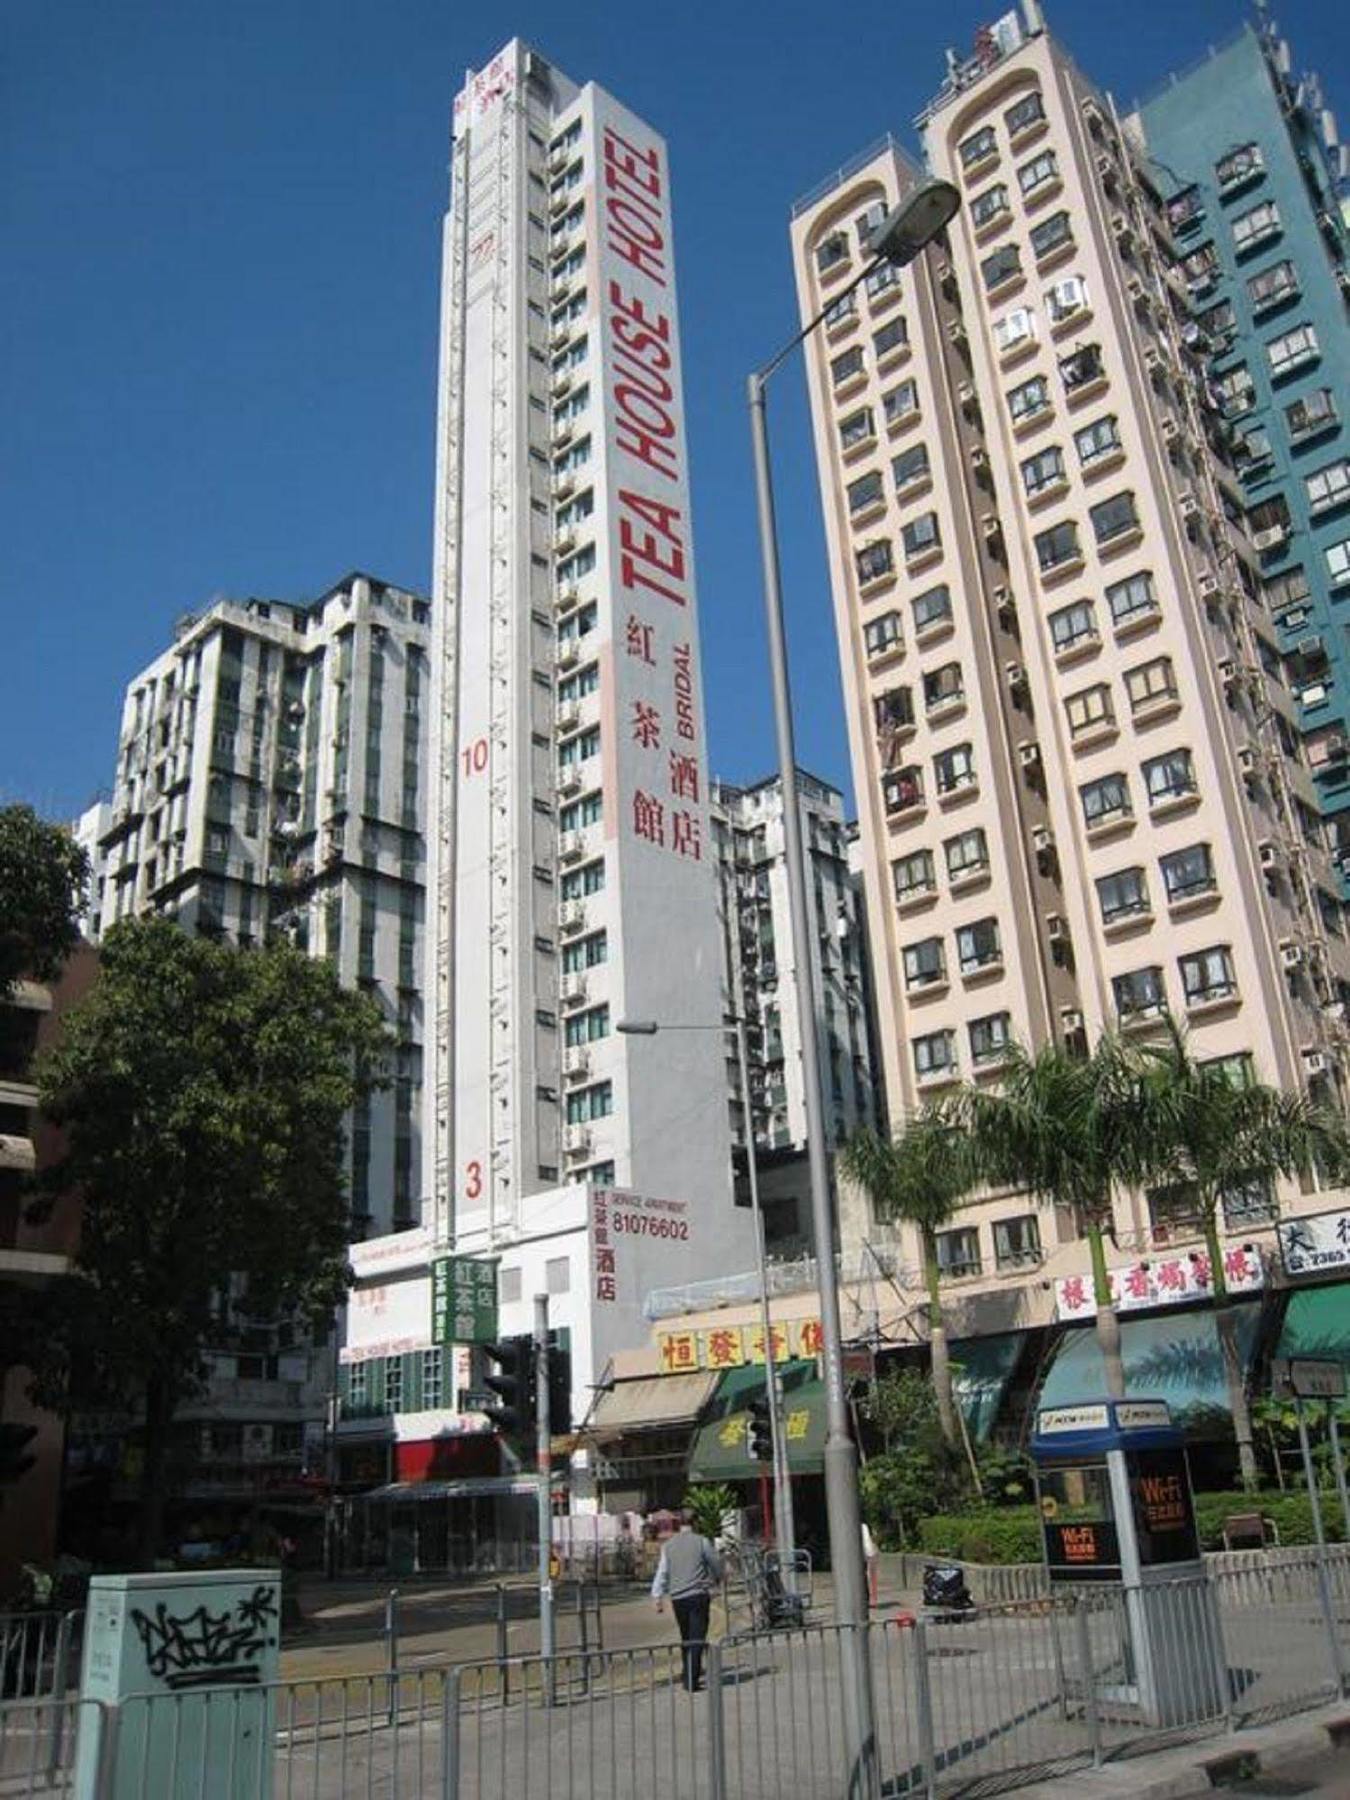 Bridal Tea House Hotel Hung Hom - Winslow St. Kowloon  Zewnętrze zdjęcie